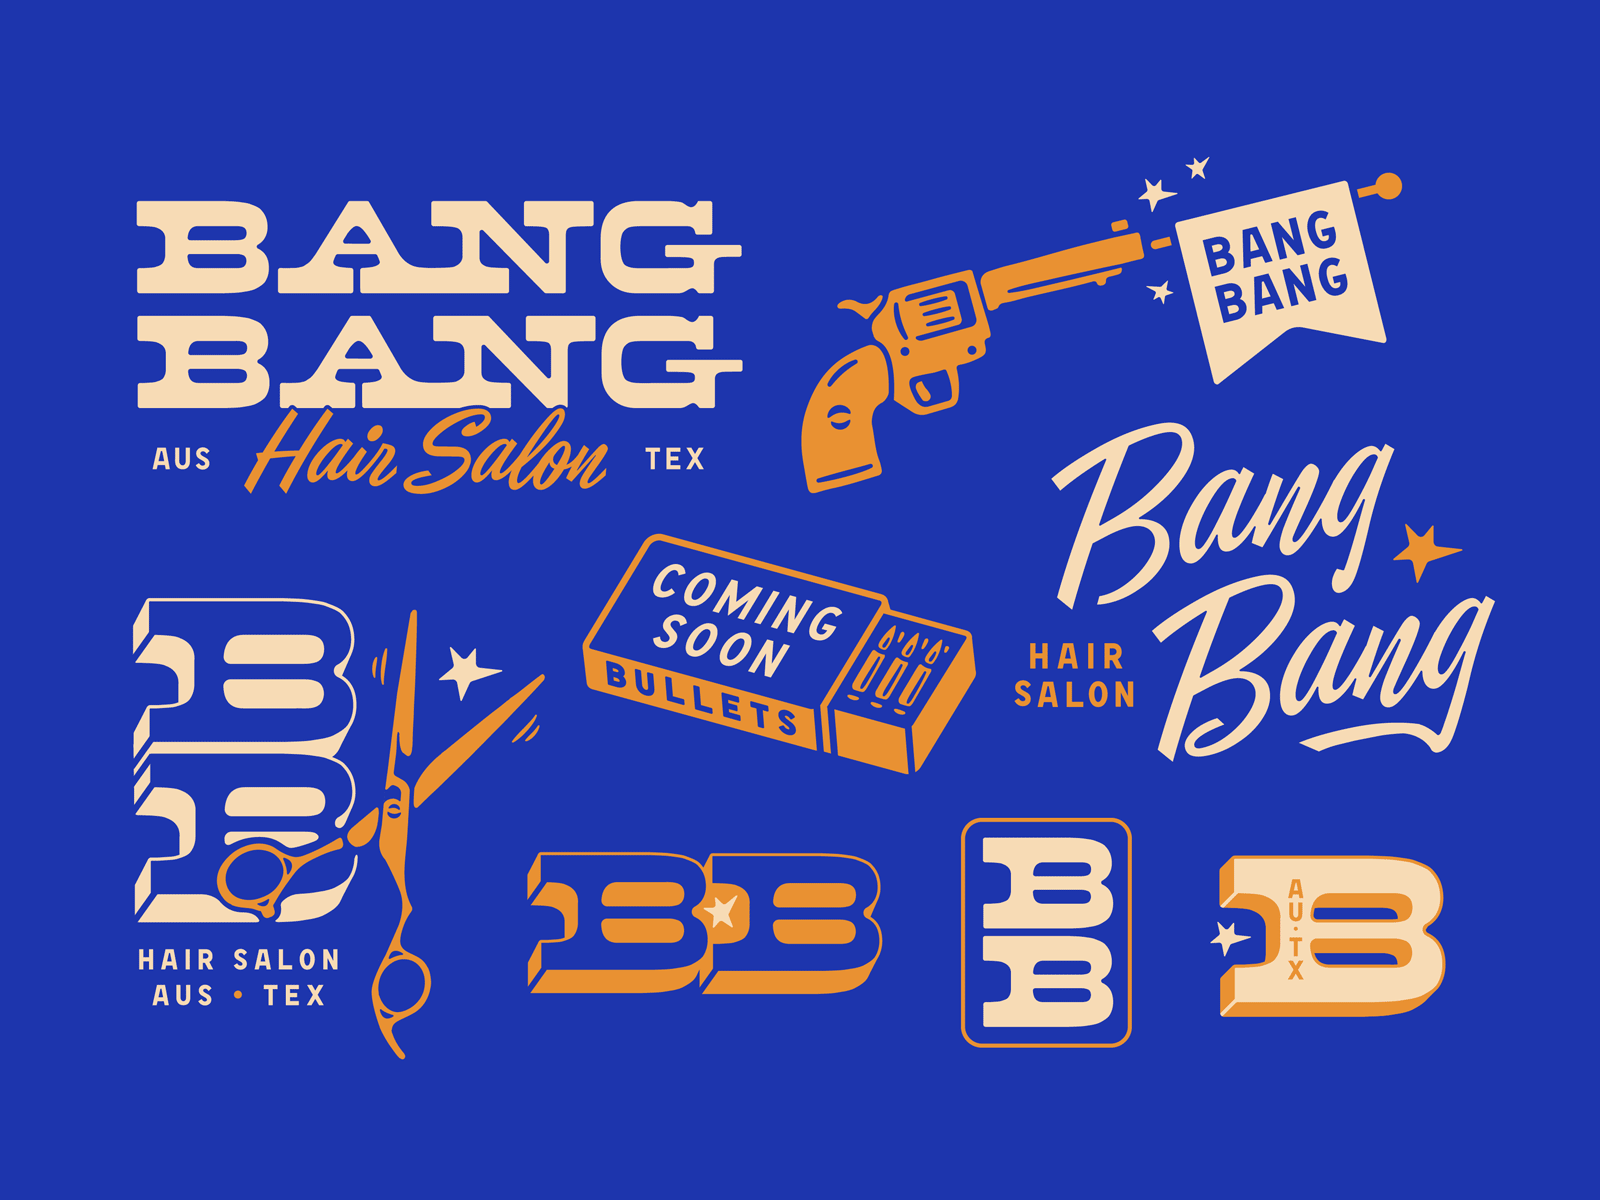 Bang Bang bang brand bullets gun haircut illustration logo salon scissors shot western